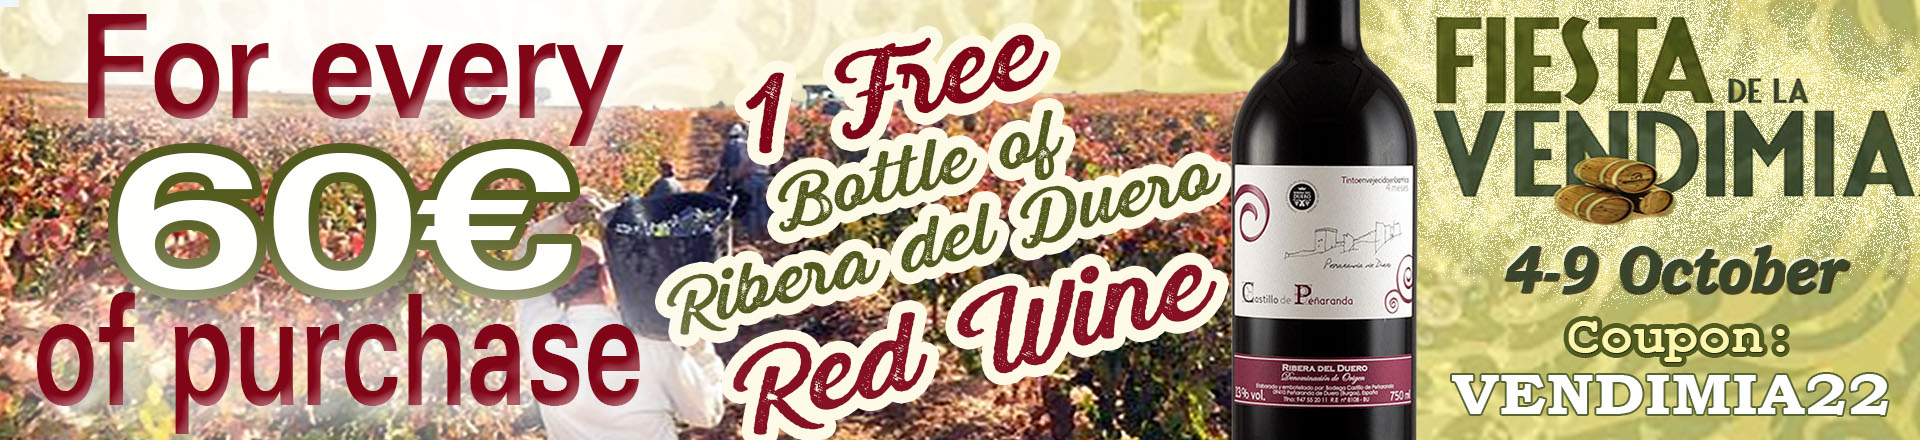 A free bottle of Ribera del Duero Wine